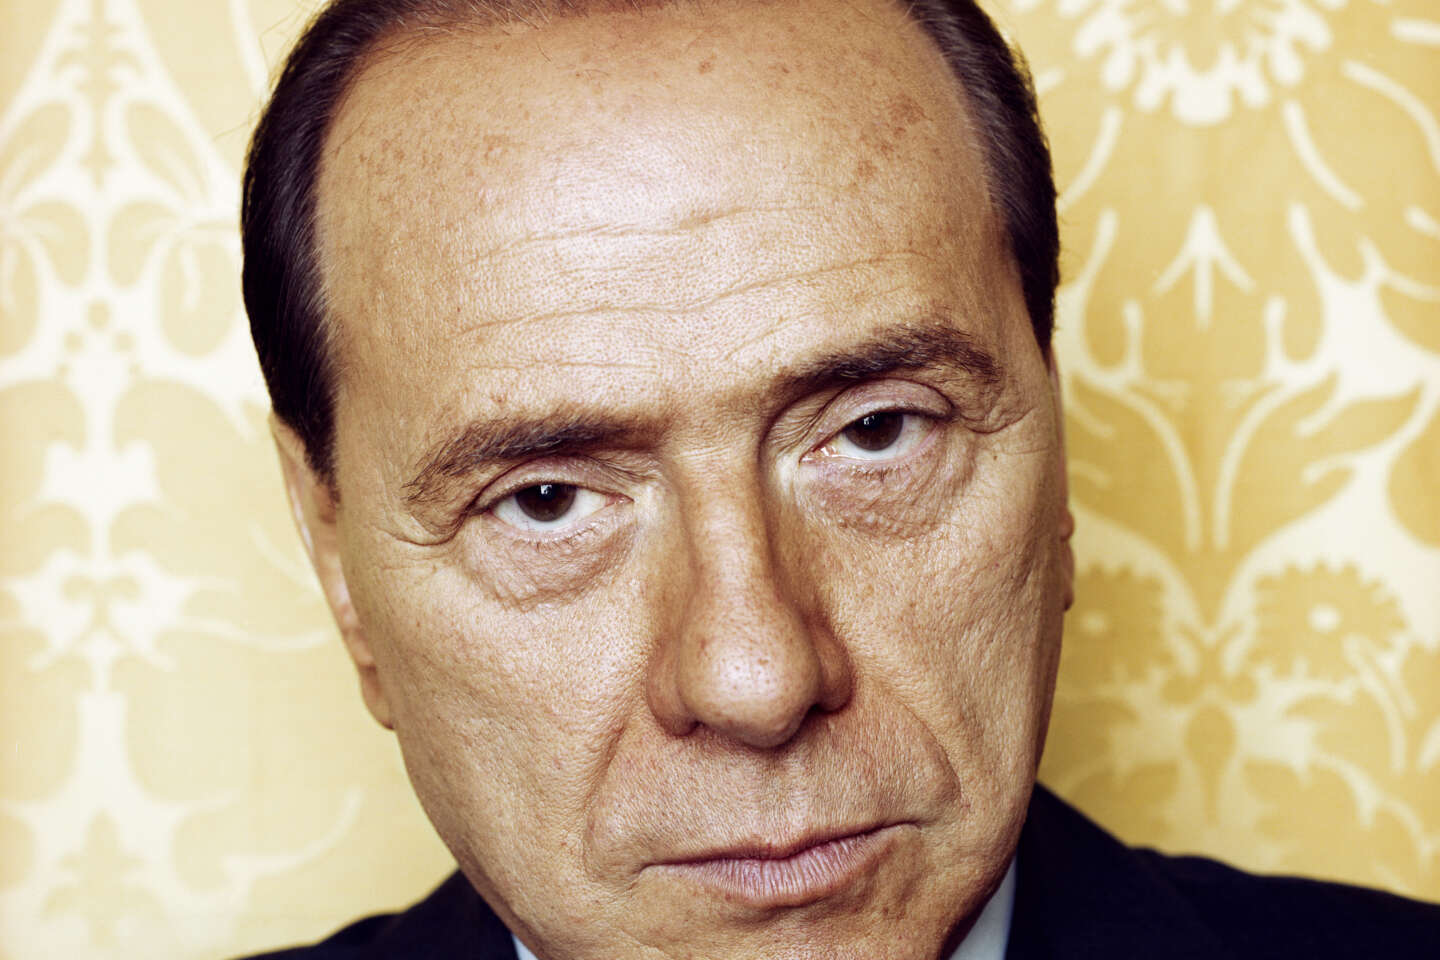 Silvio Berlusconi, scandal-prone former Italian prime minister, has died